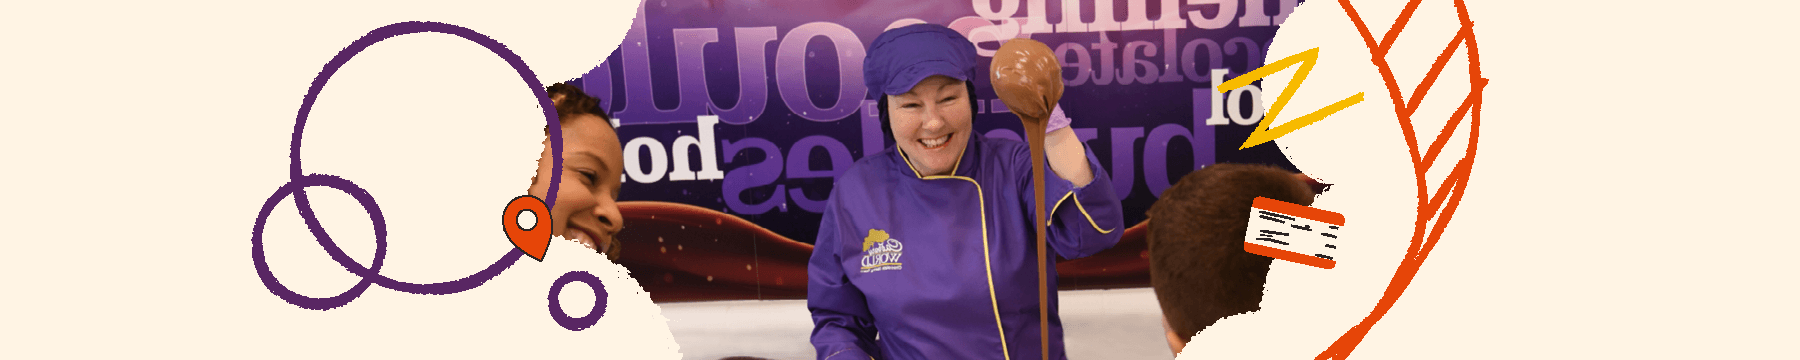 Cadbury world chocolatier handling chocolate to spectators 